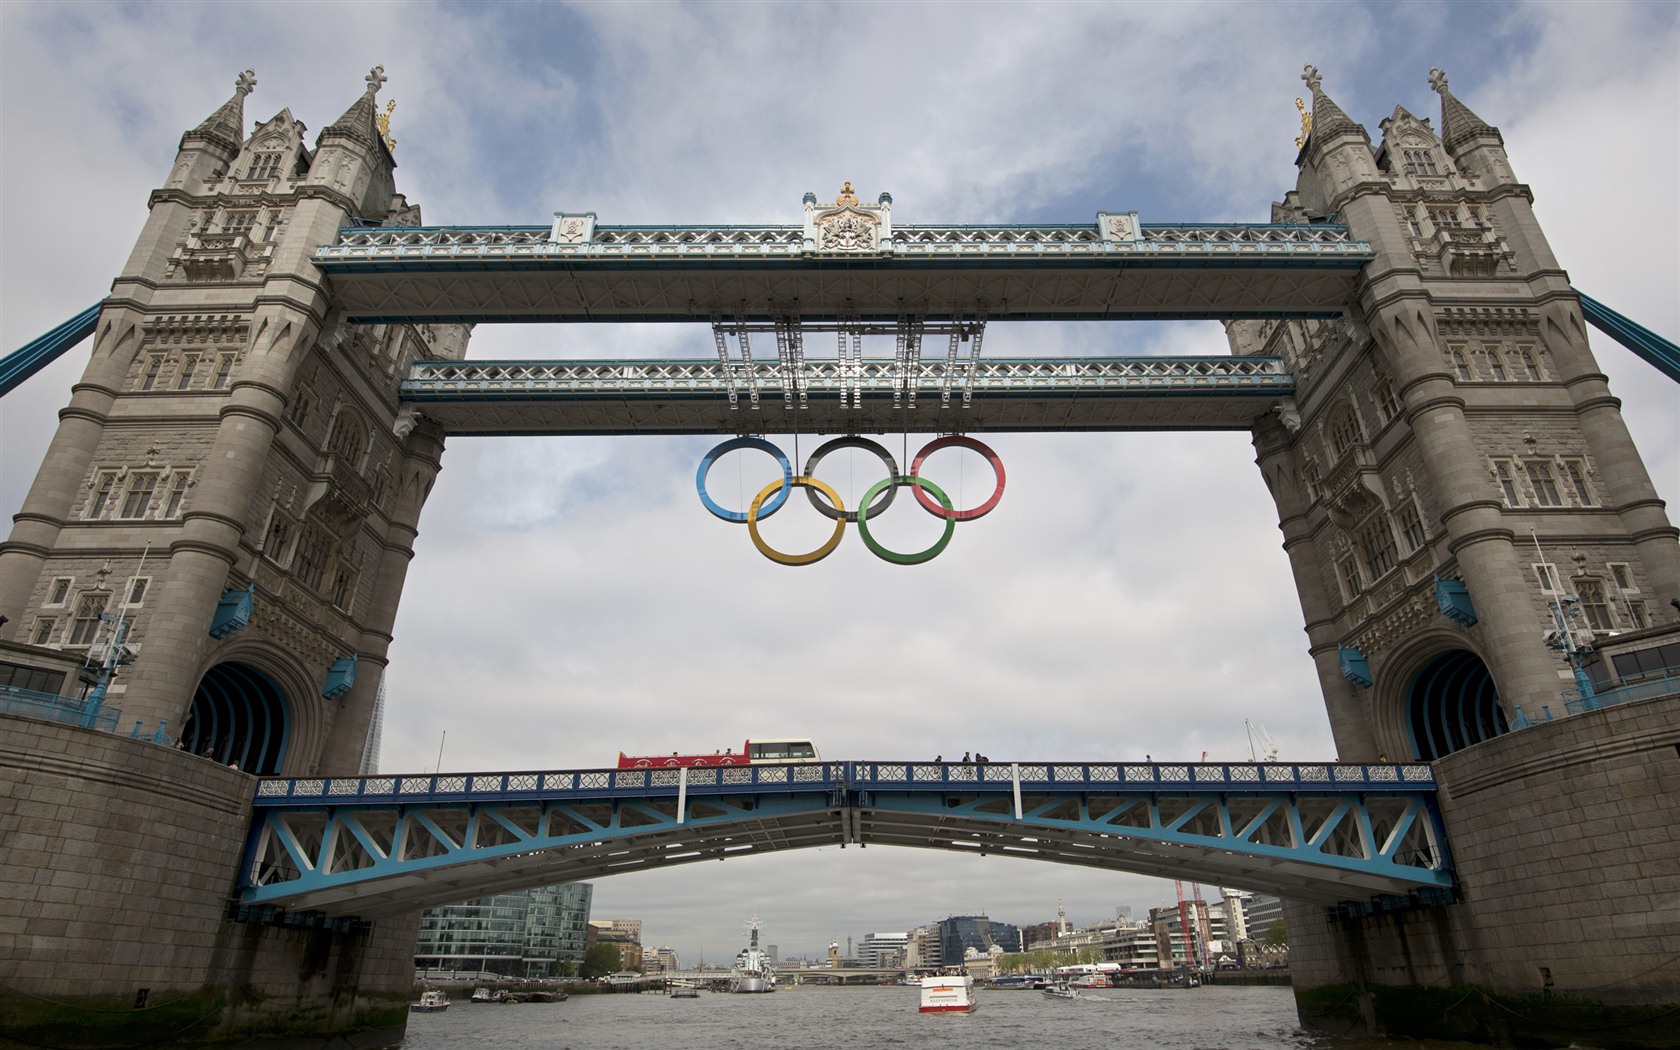 Londres 2012 Olimpiadas fondos temáticos (1) #27 - 1680x1050